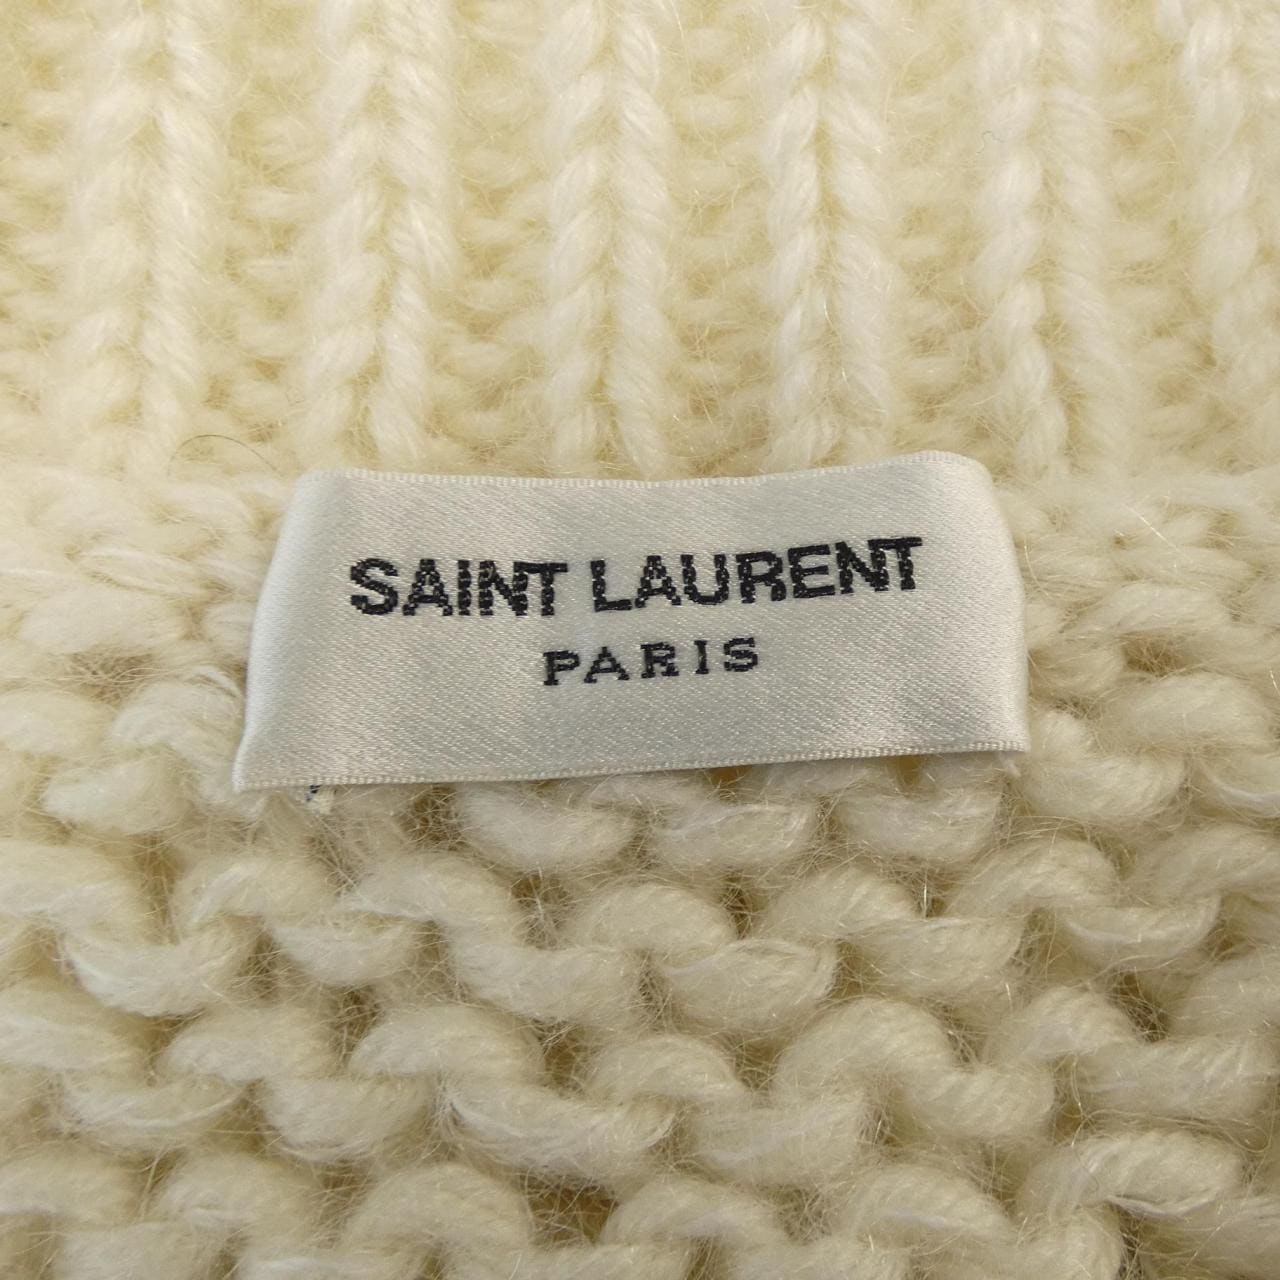 SAINT LAURENT SAINT LAURENT knitwear